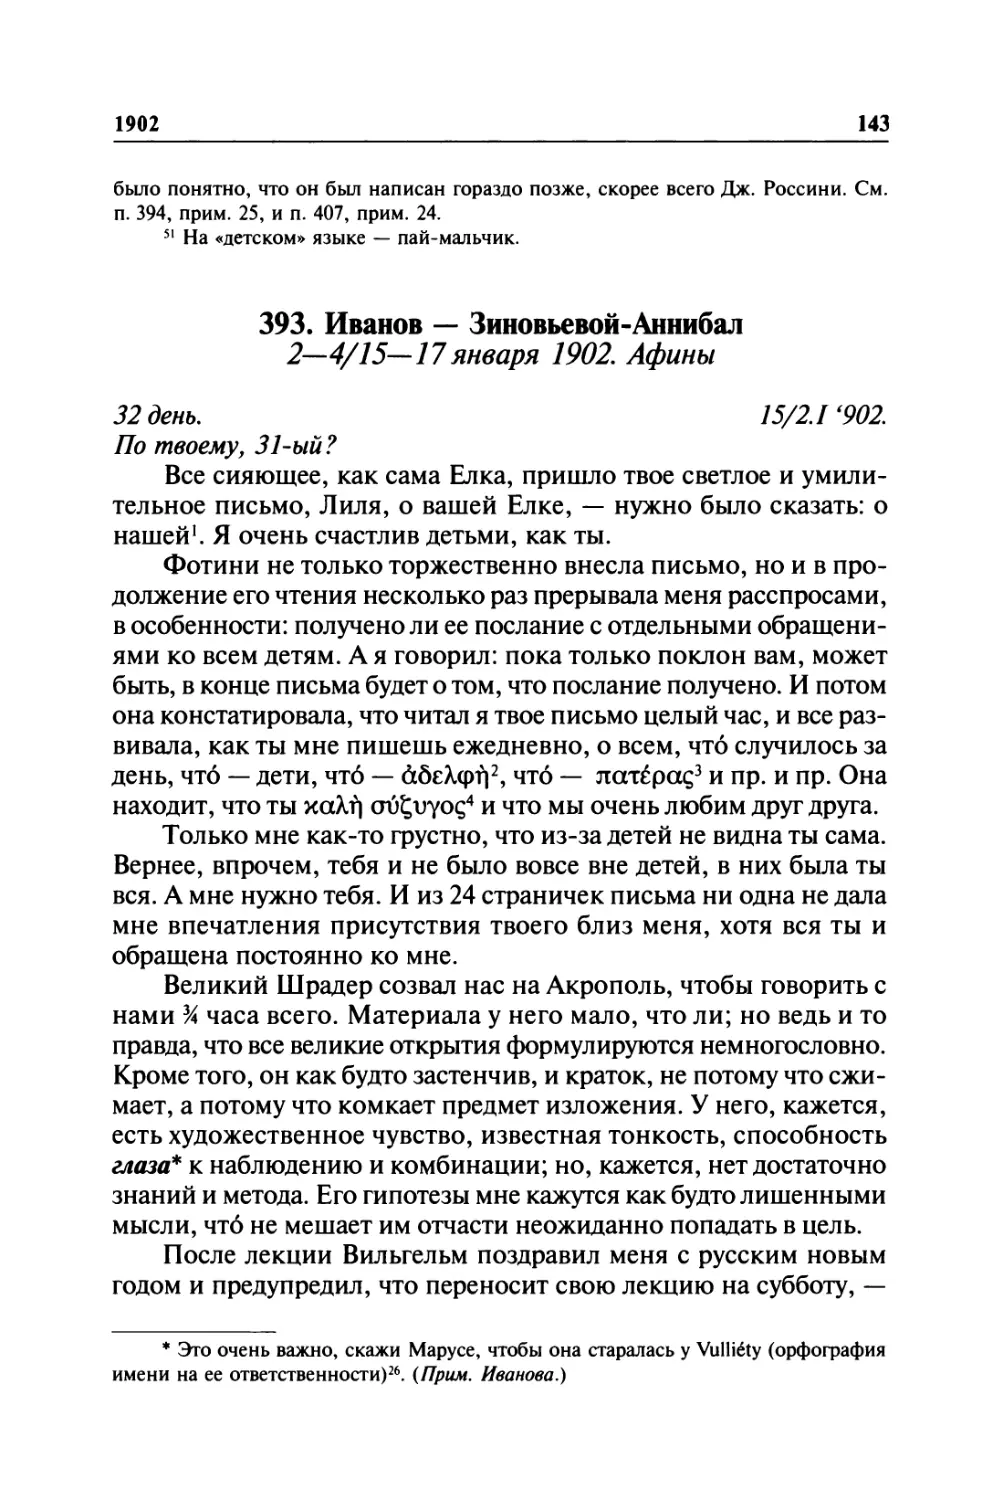 393. Иванов — Зиновьевой-Аннибал. 2—4/ 15—17января 1902. Афины